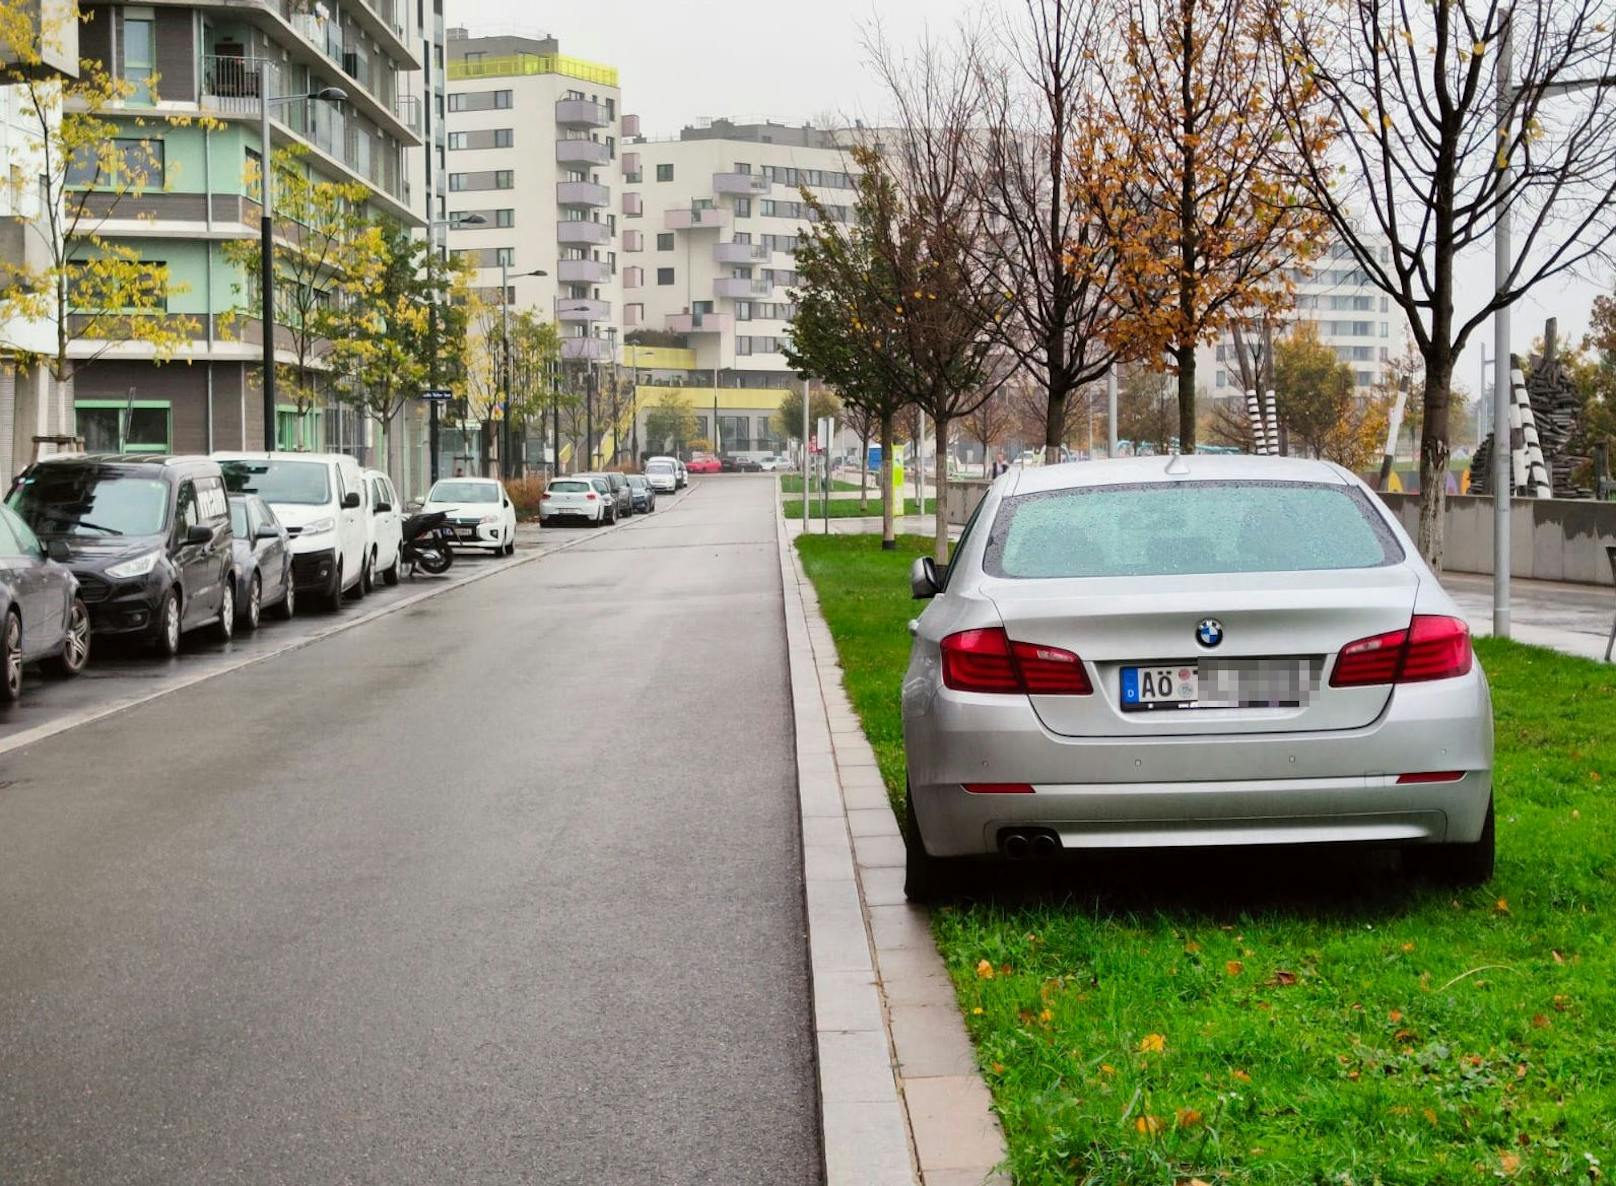 Am Freitagmorgen sorgte dieses Parkmanöver in der Wiener Donaustadt für Aufsehen.